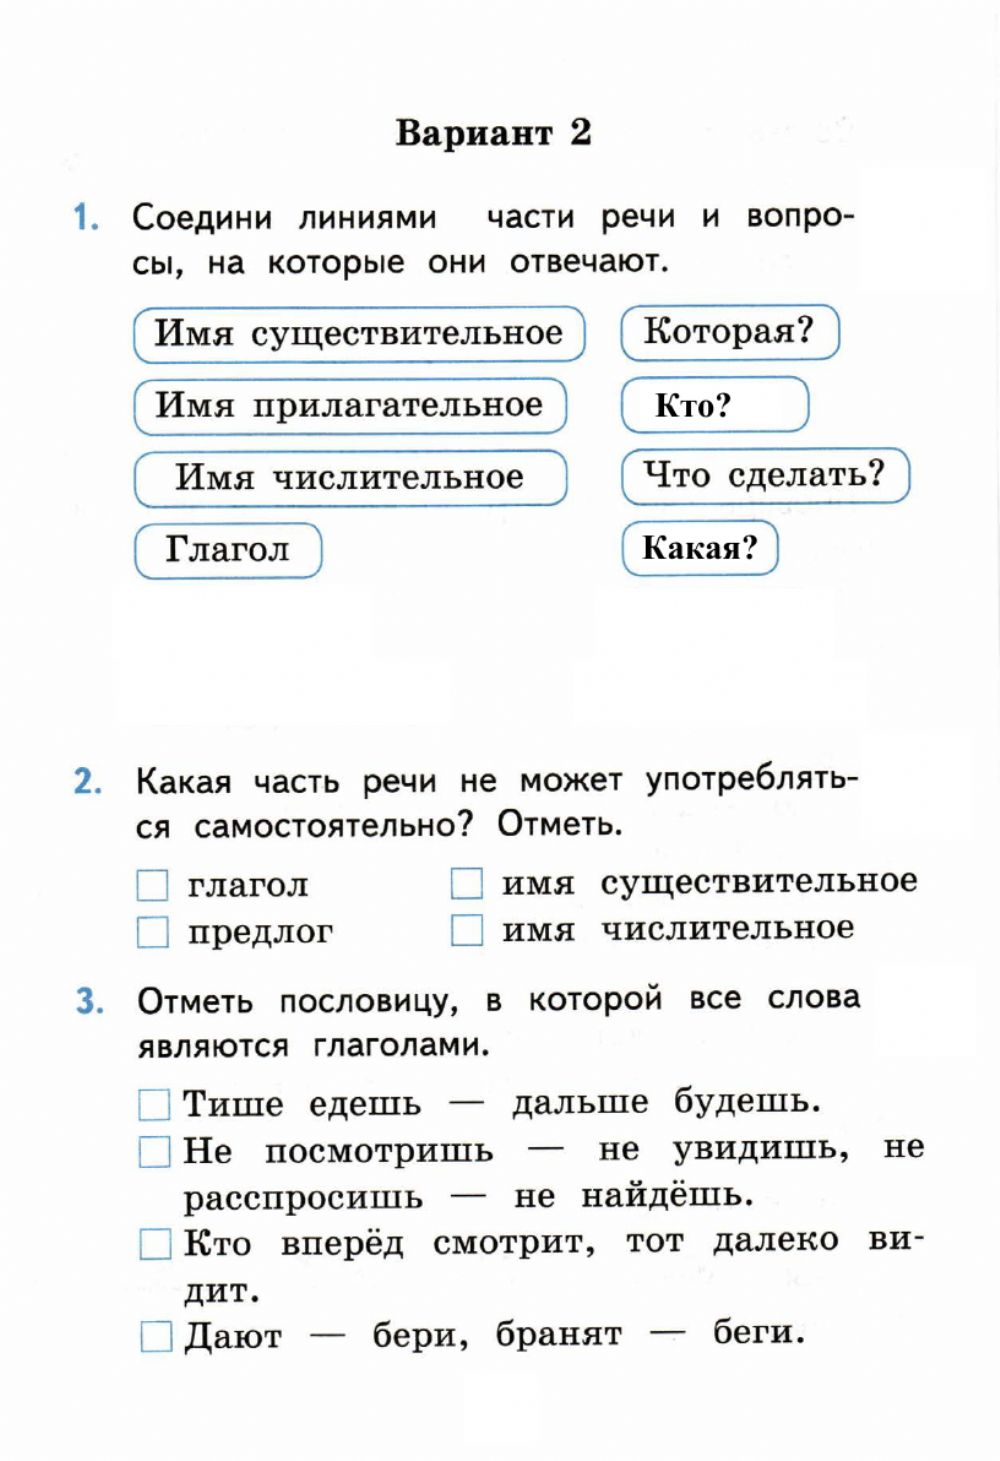 Задания по русскому языку 3 класс для самостоятельной работы